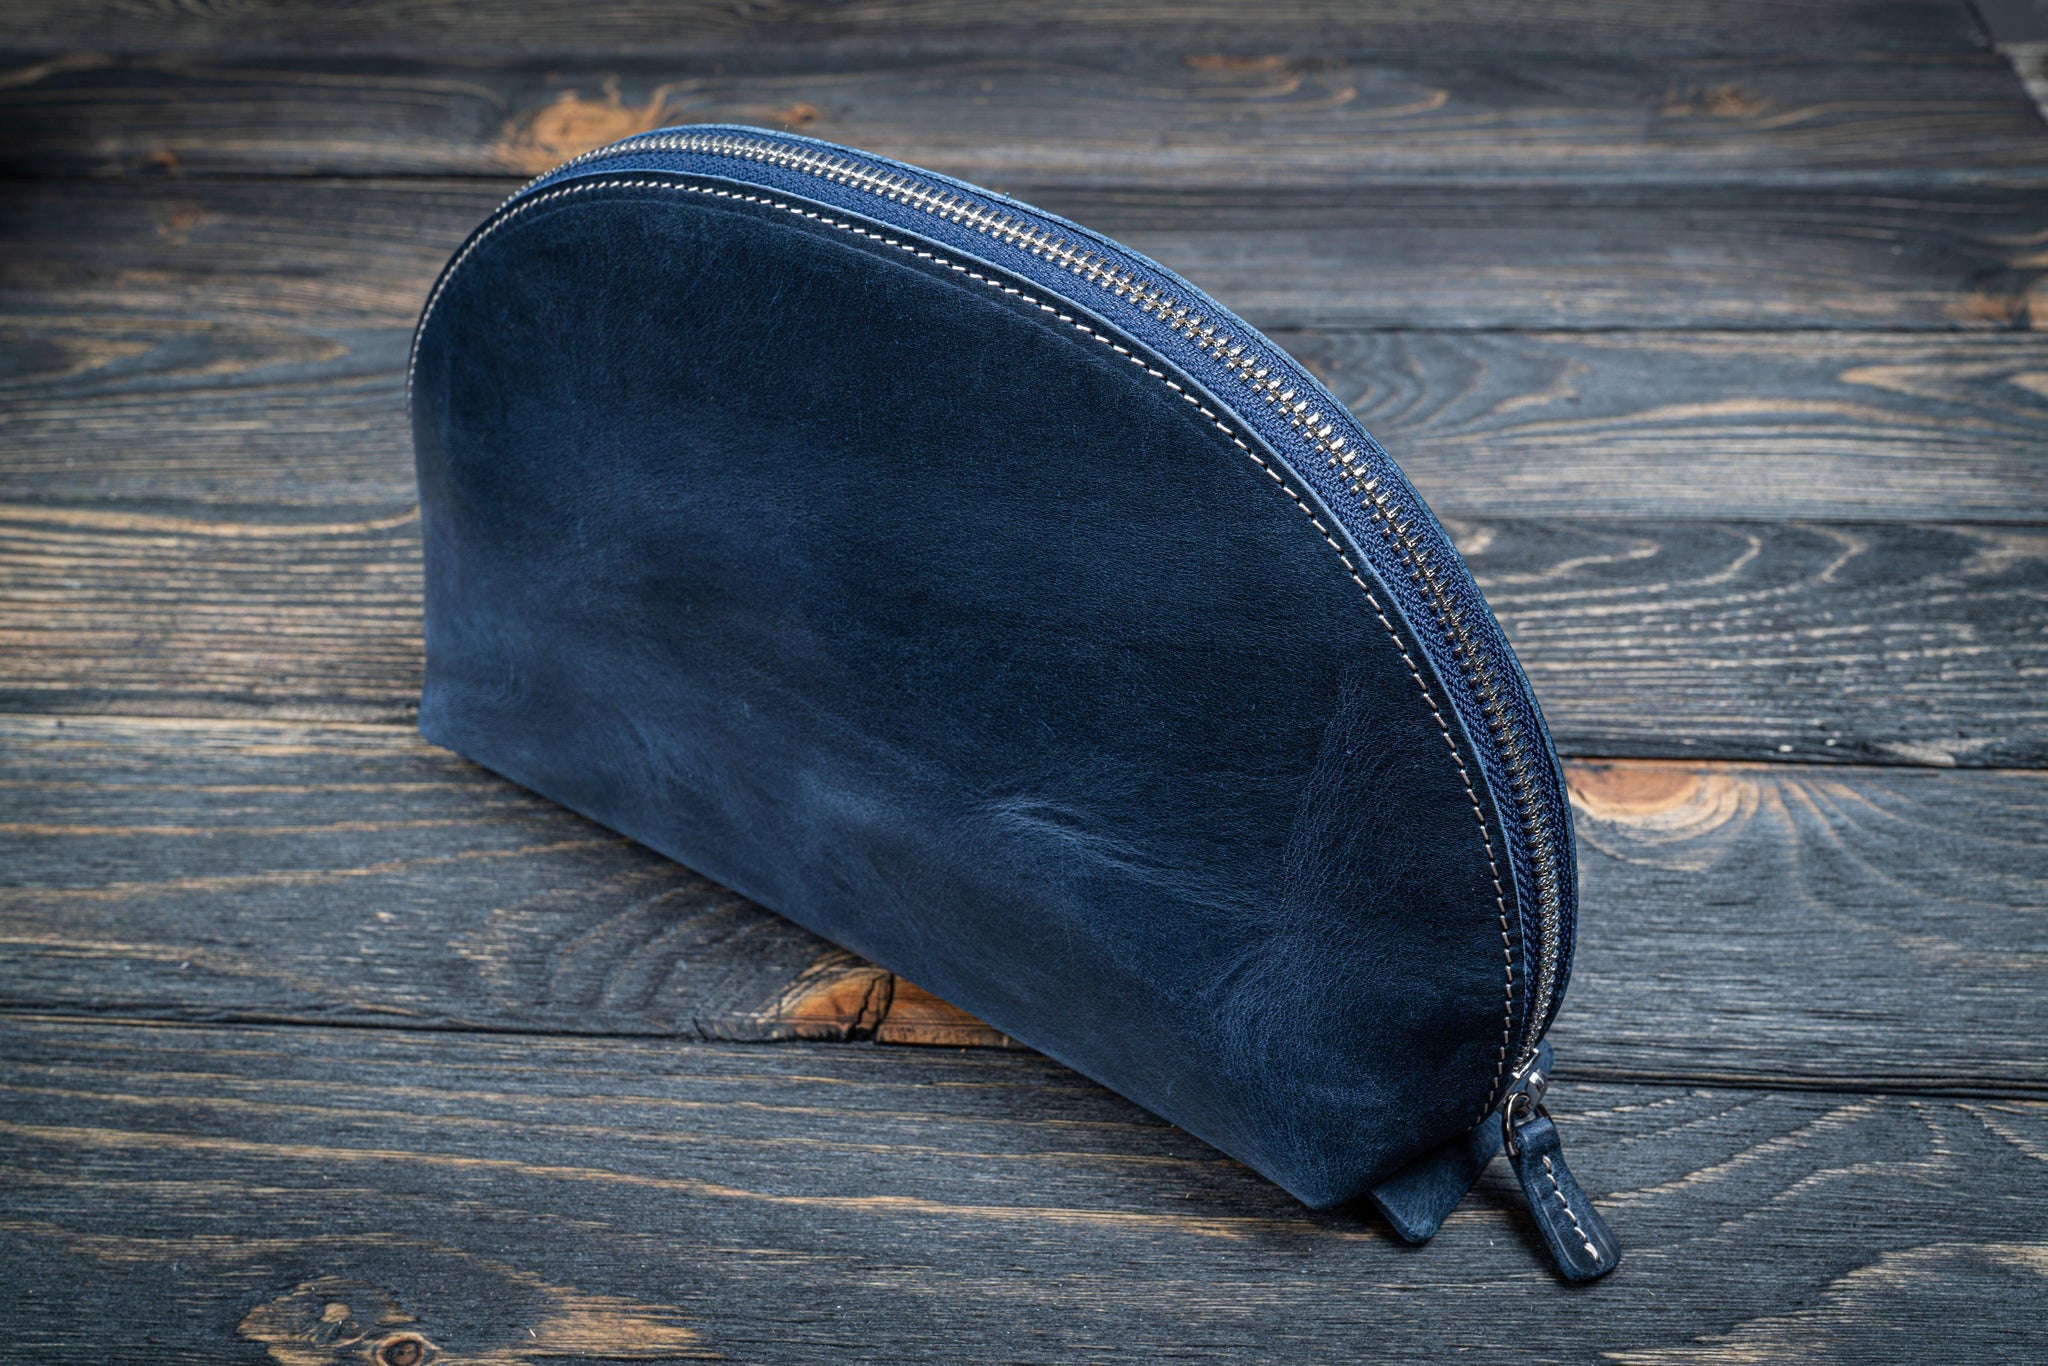 Large OVERSIZE Dark Blue Tote Bag NAVY Blue Leather SHOPPER Bag Oversized  Tote Big Shoulder Bag Shopping Bag Everyday Purse - Etsy